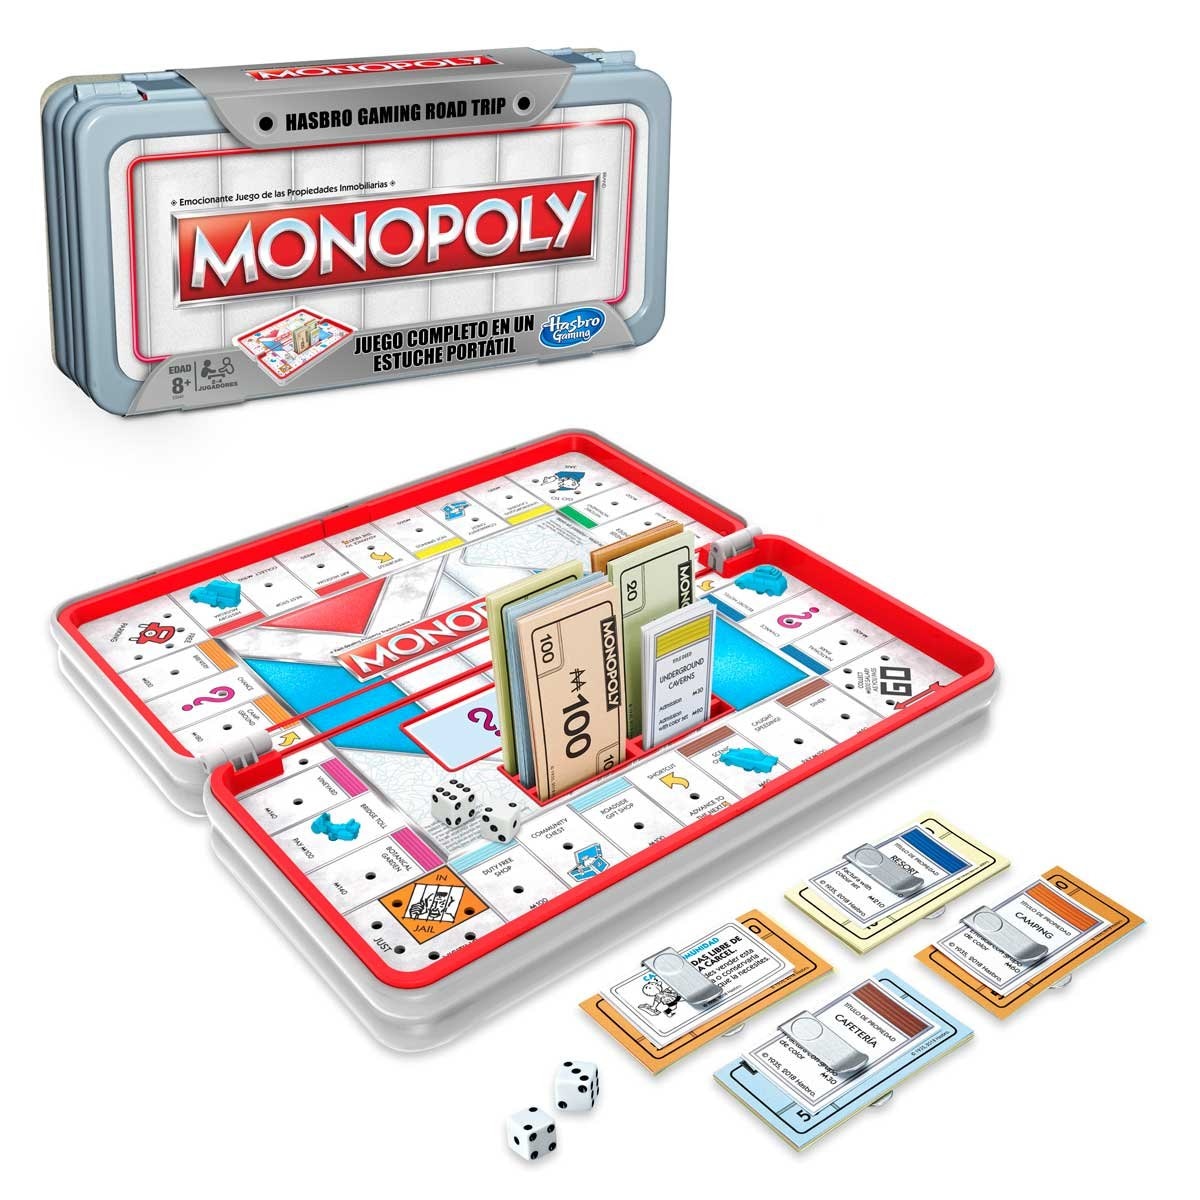 Monopoly Juego Plaza Vea - Monopoly sonic hasbro - juego de mesa - Sears - Según el libro guiness de los récords, monopoly es el juego de mesa más jugado del mundo, con más de 500 millones de aficionados en el planeta.